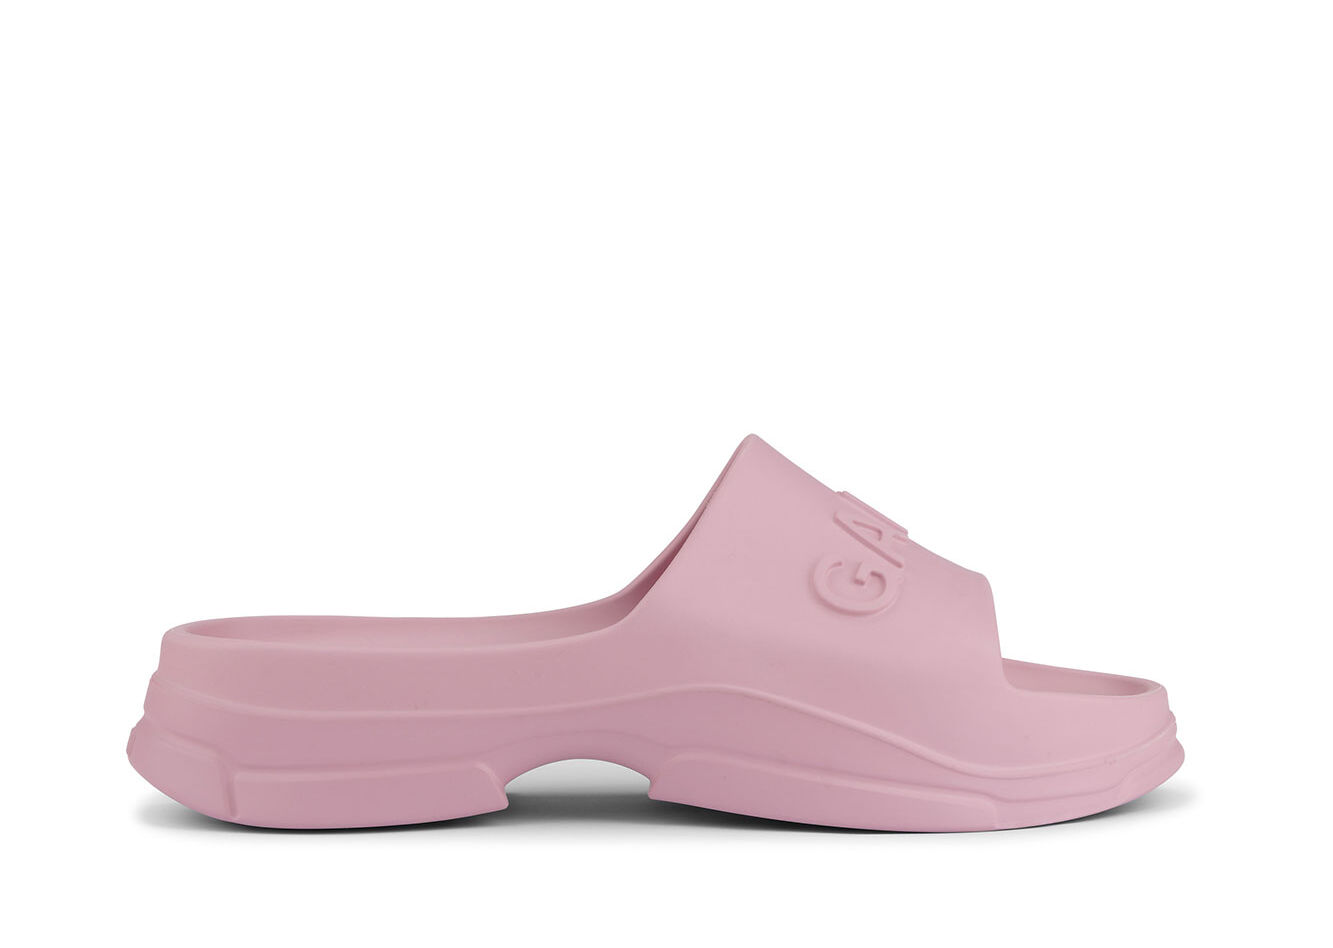 Light Pink Pool Slide Sandals